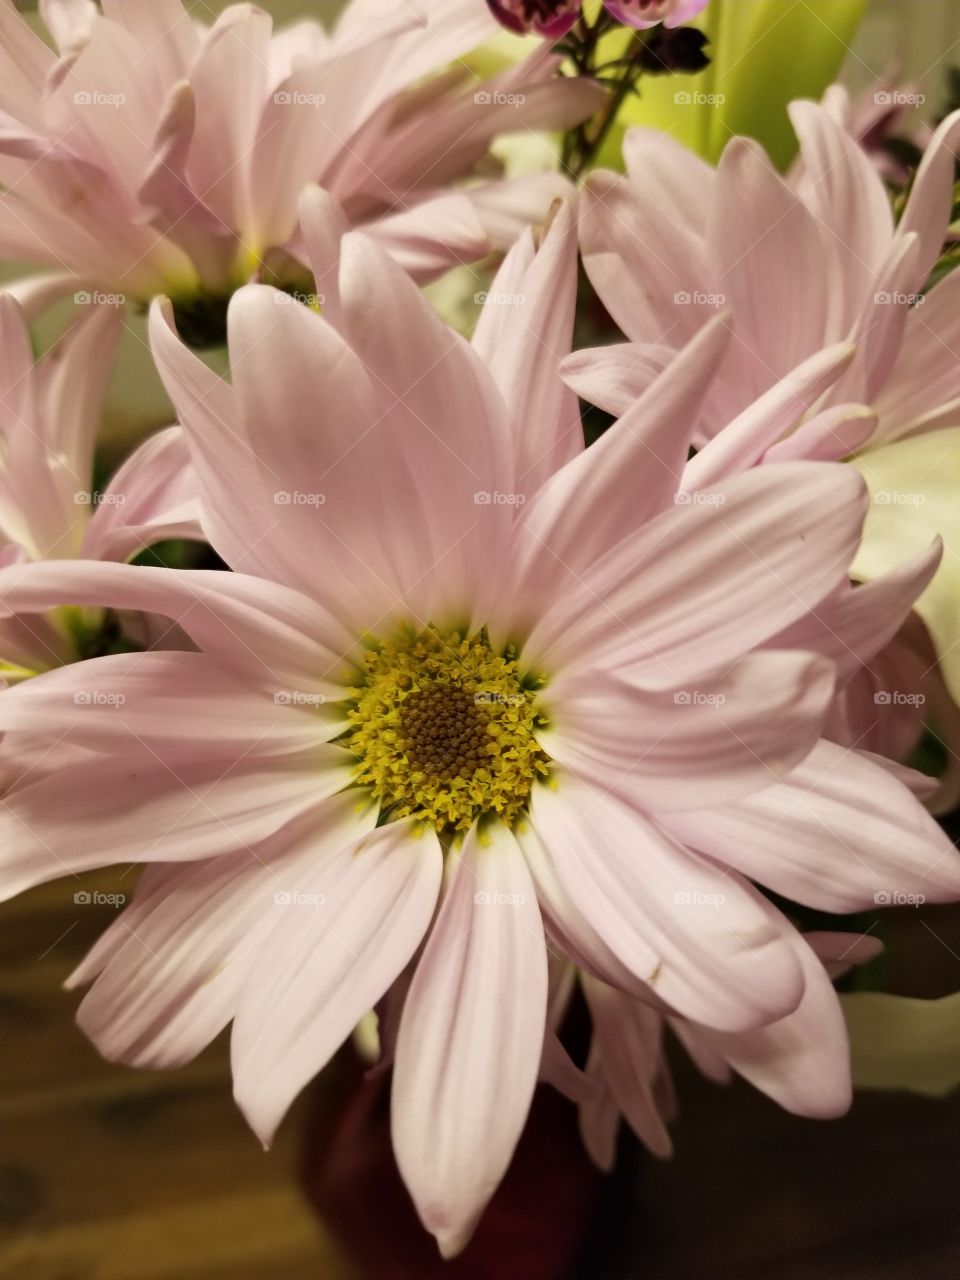 light pink flower